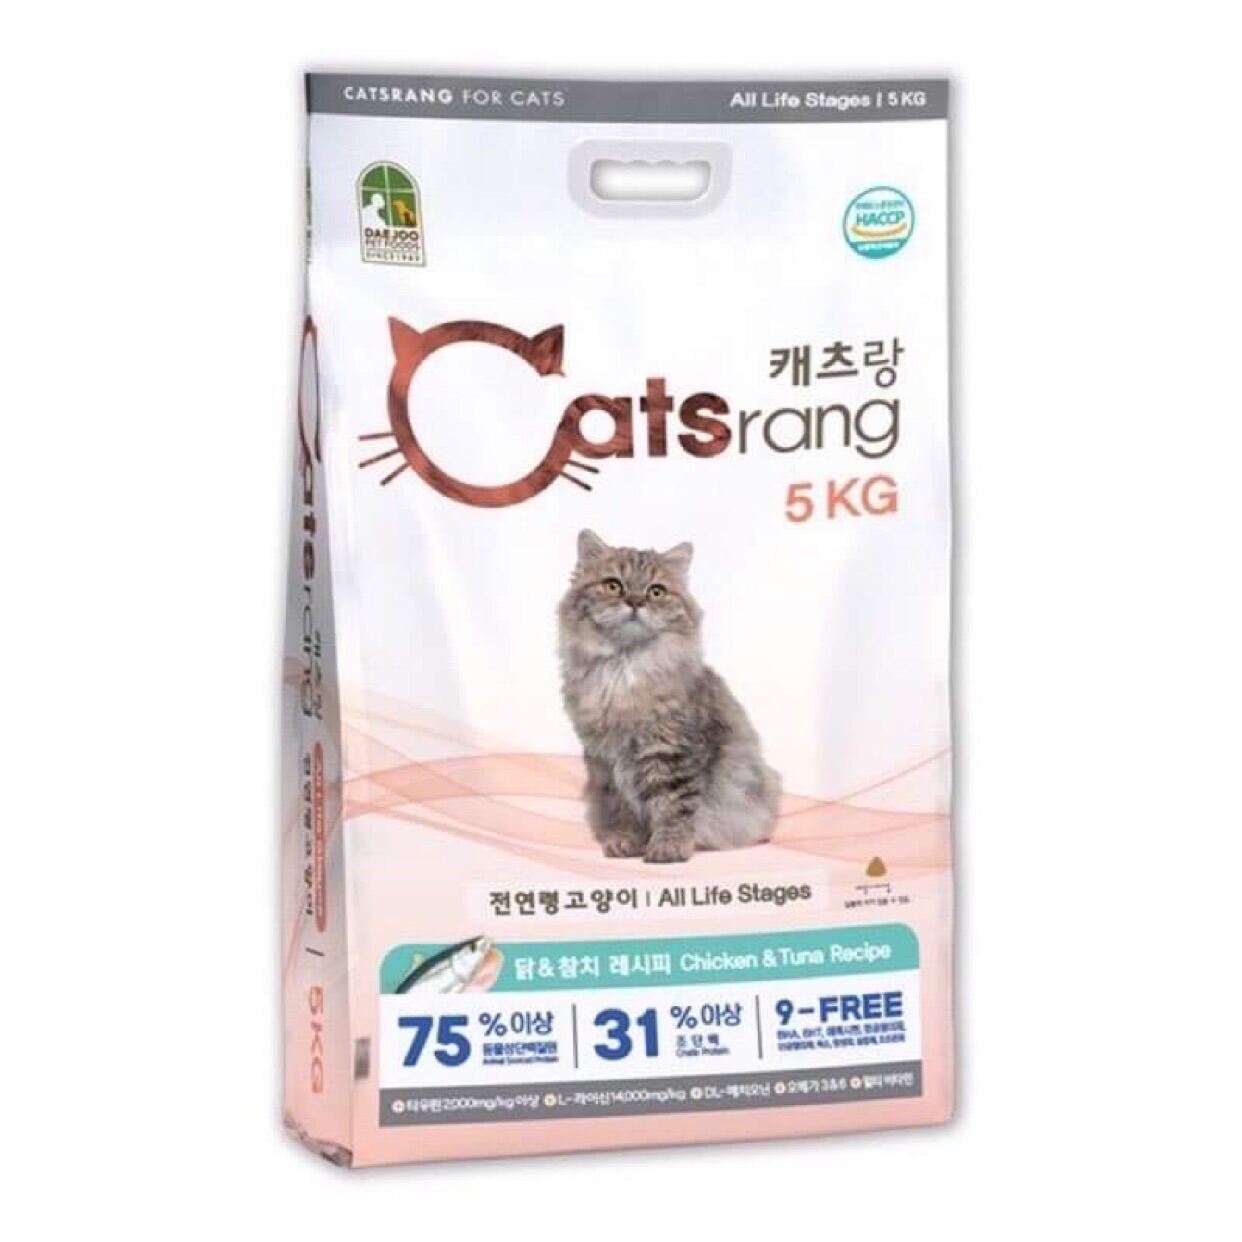 HẠT CATSRANG BAO 5kg ❤️ Thức ăn khô cho mèo